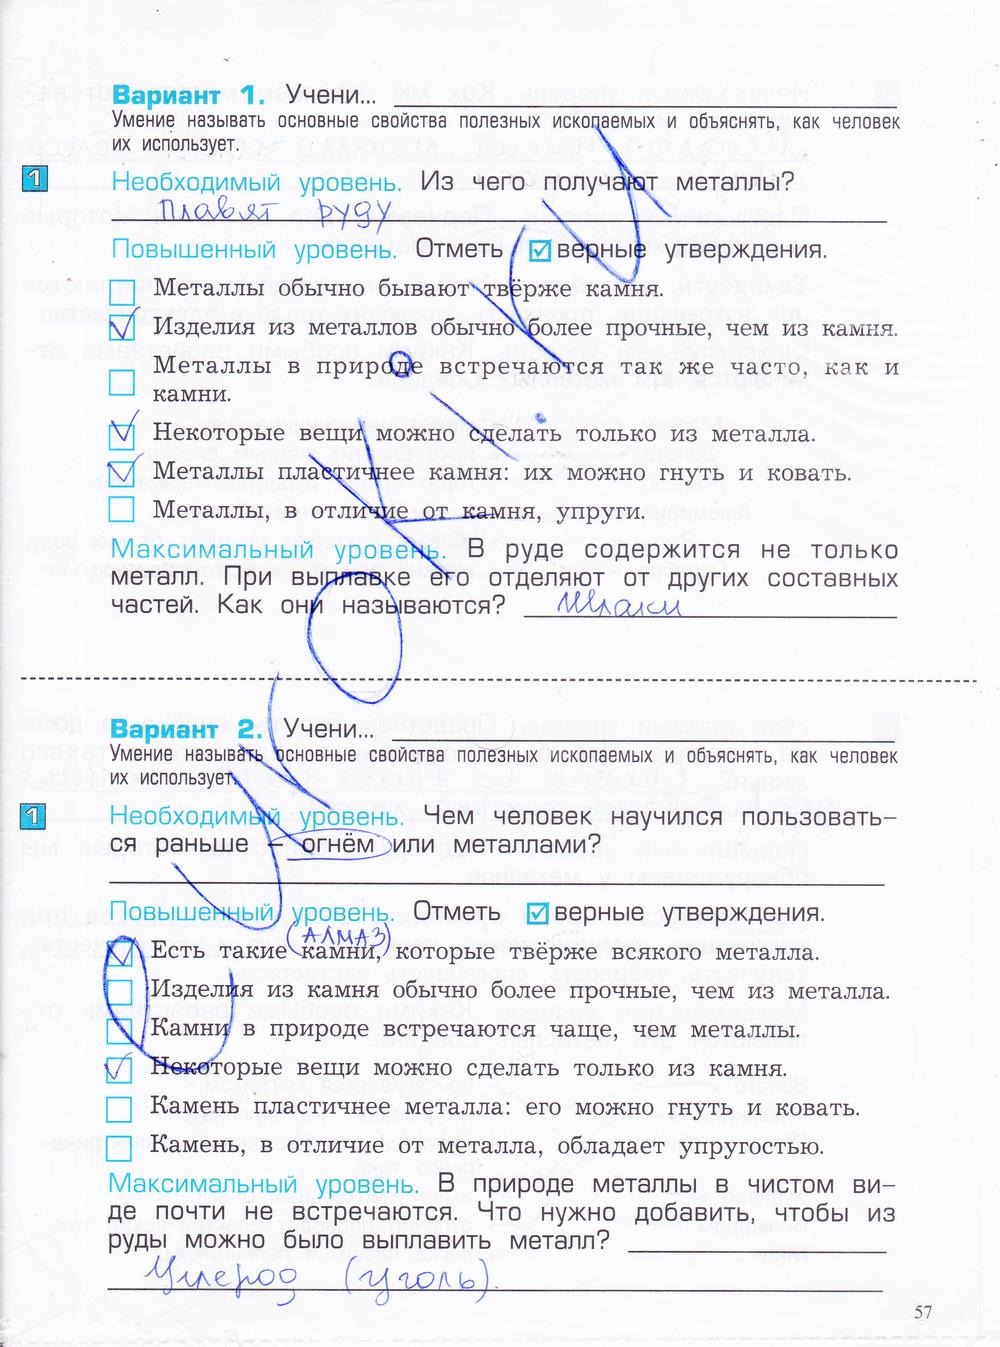 гдз 4 класс проверочные и контрольные работы часть 1 страница 57 окружающий мир Вахрушев, Бурский, Родыгина